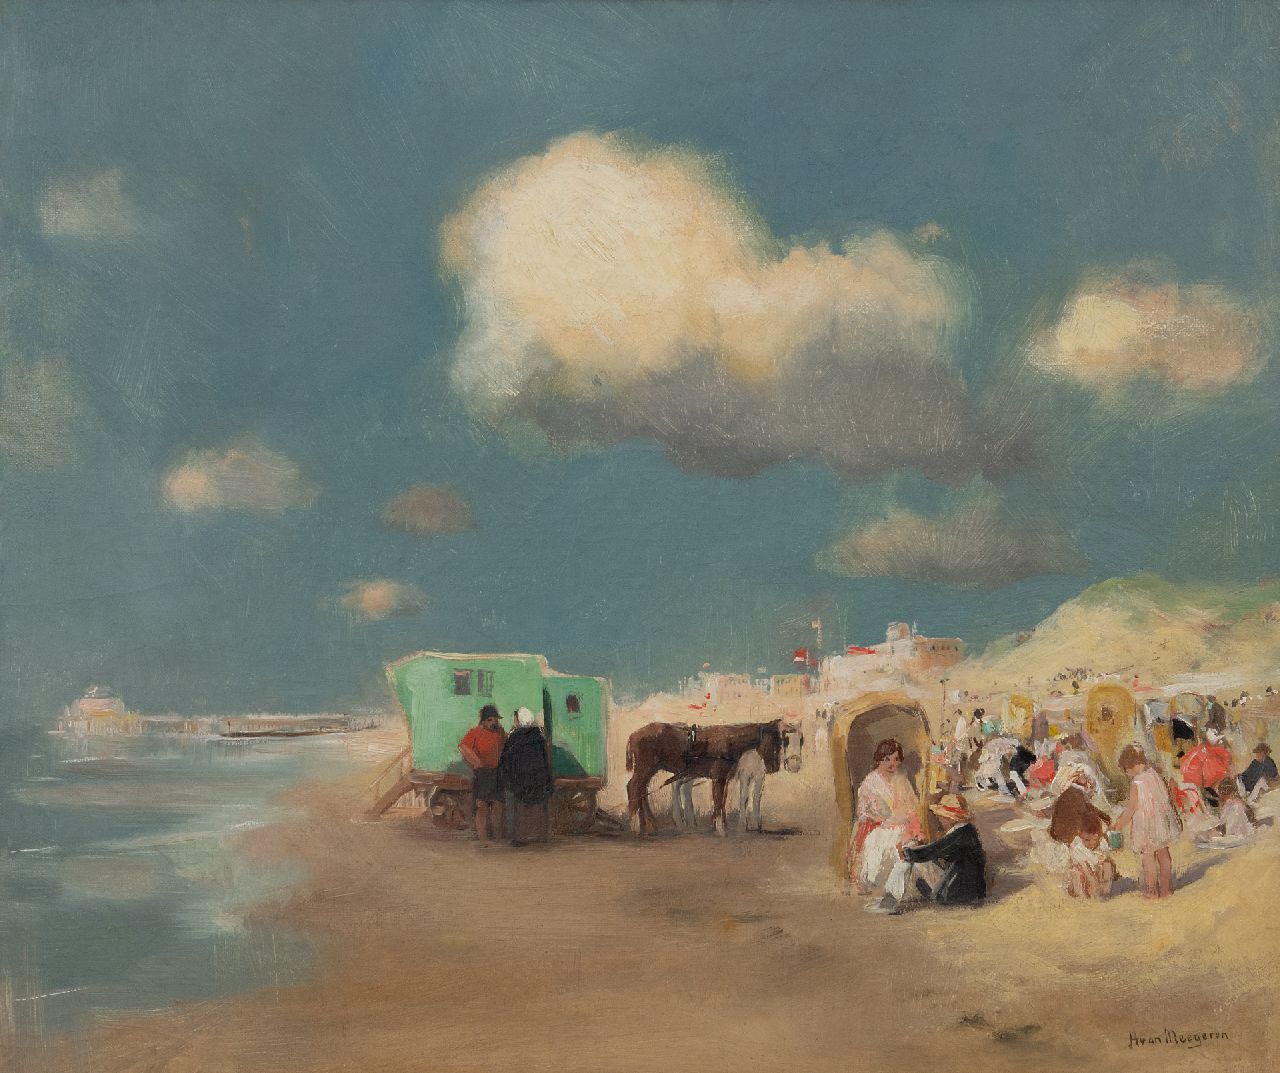 Meegeren H.A. van | Henricus Antonius 'Han' van Meegeren | Schilderijen te koop aangeboden | Zomerse dag op het strand bij Scheveningen, olieverf op doek 50,0 x 60,0 cm, gesigneerd rechtsonder